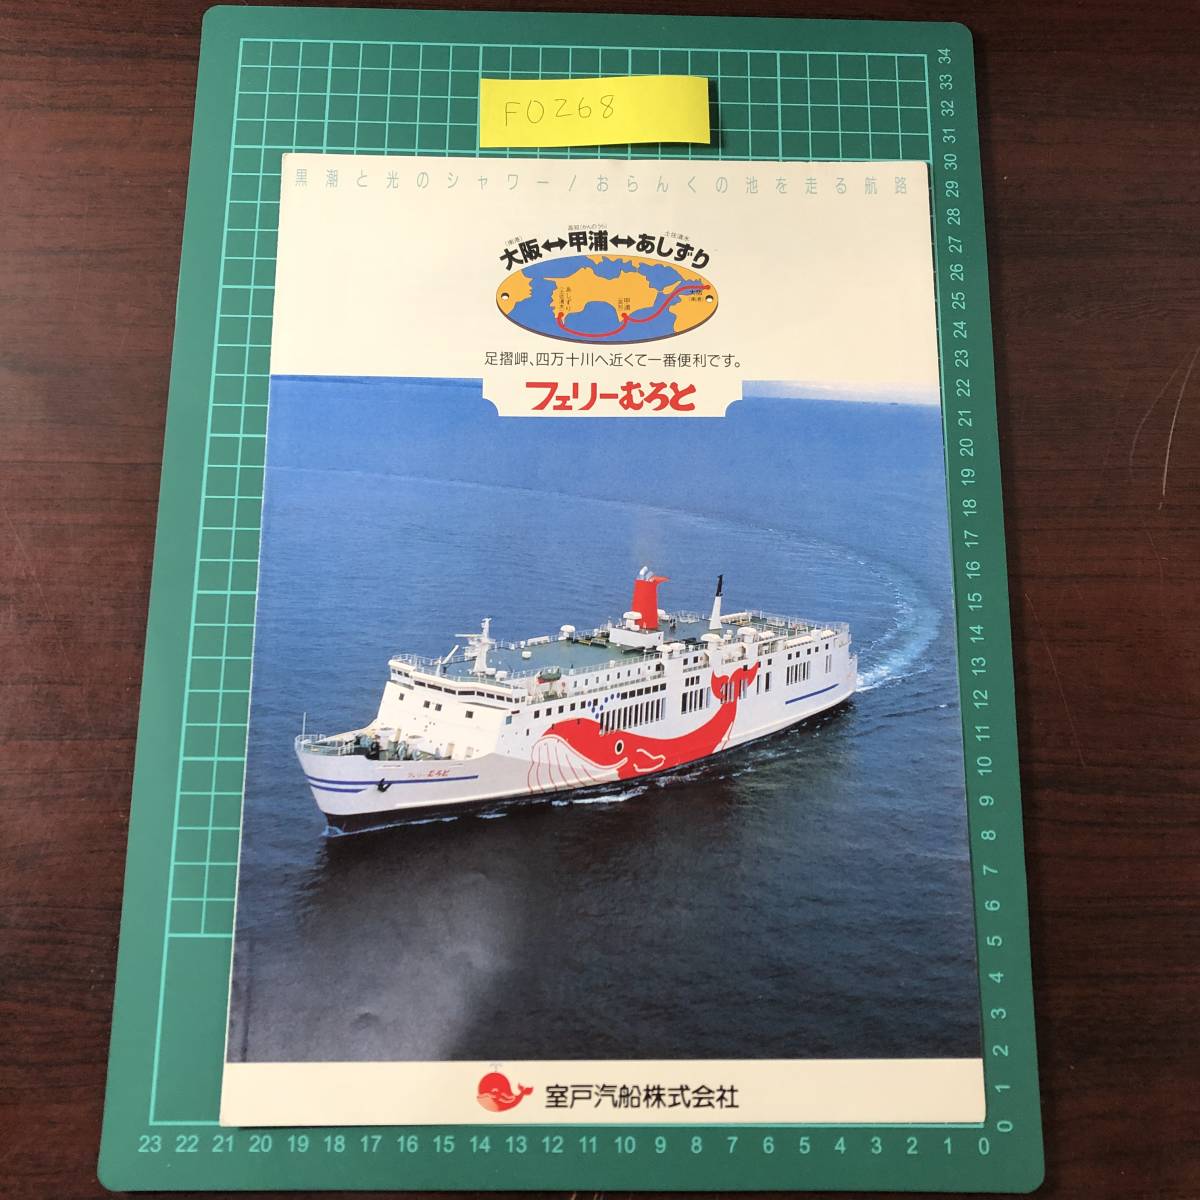  Ferrie .... дверь . судно Osaka ~..~.... пара .. 4 десять тысяч 10 река ....1995 год примерно каталог проспект [F0268]